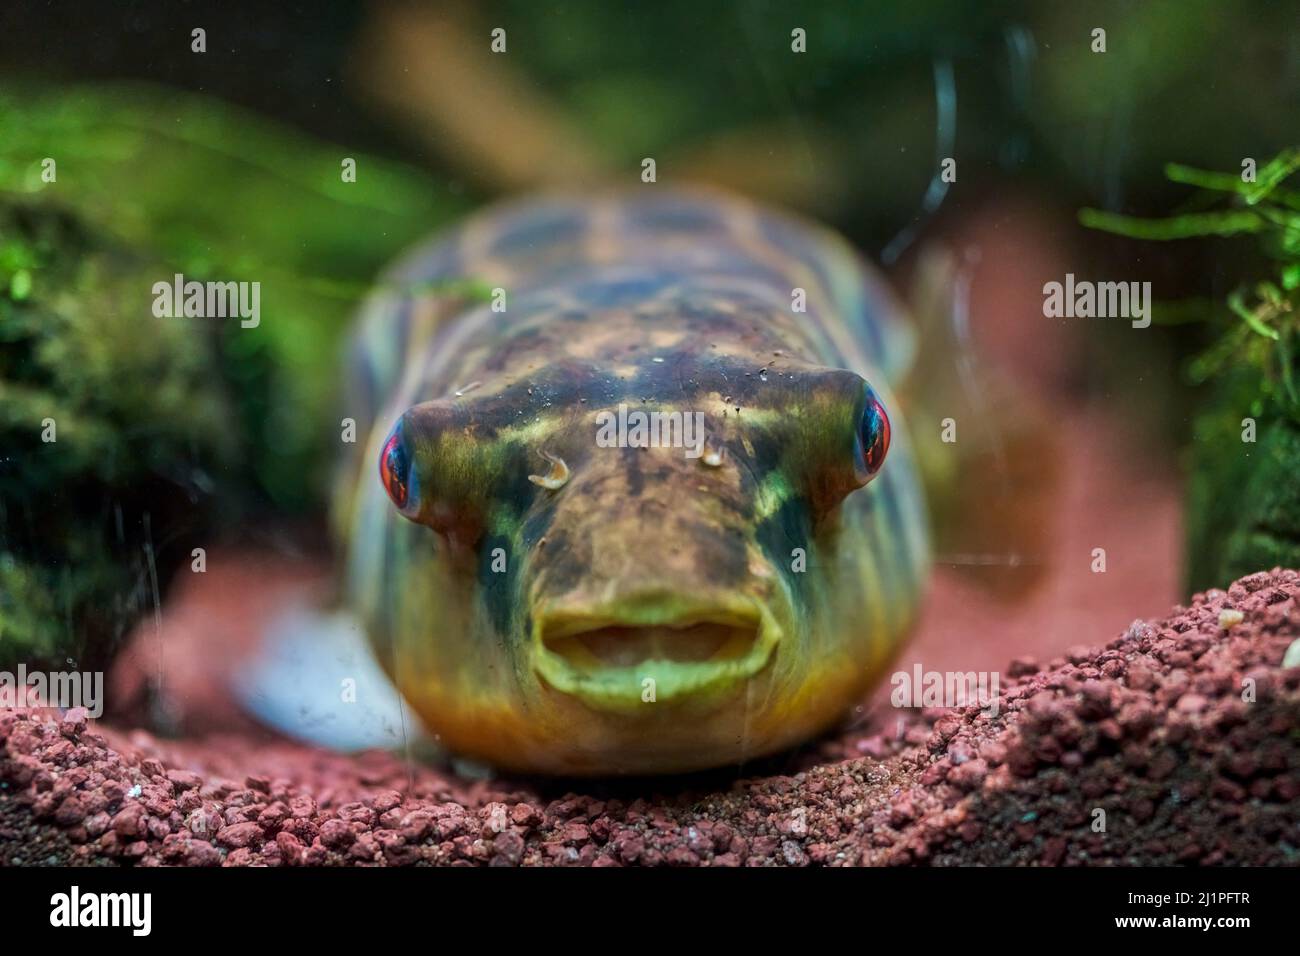 Pesce globo immagini e fotografie stock ad alta risoluzione - Alamy